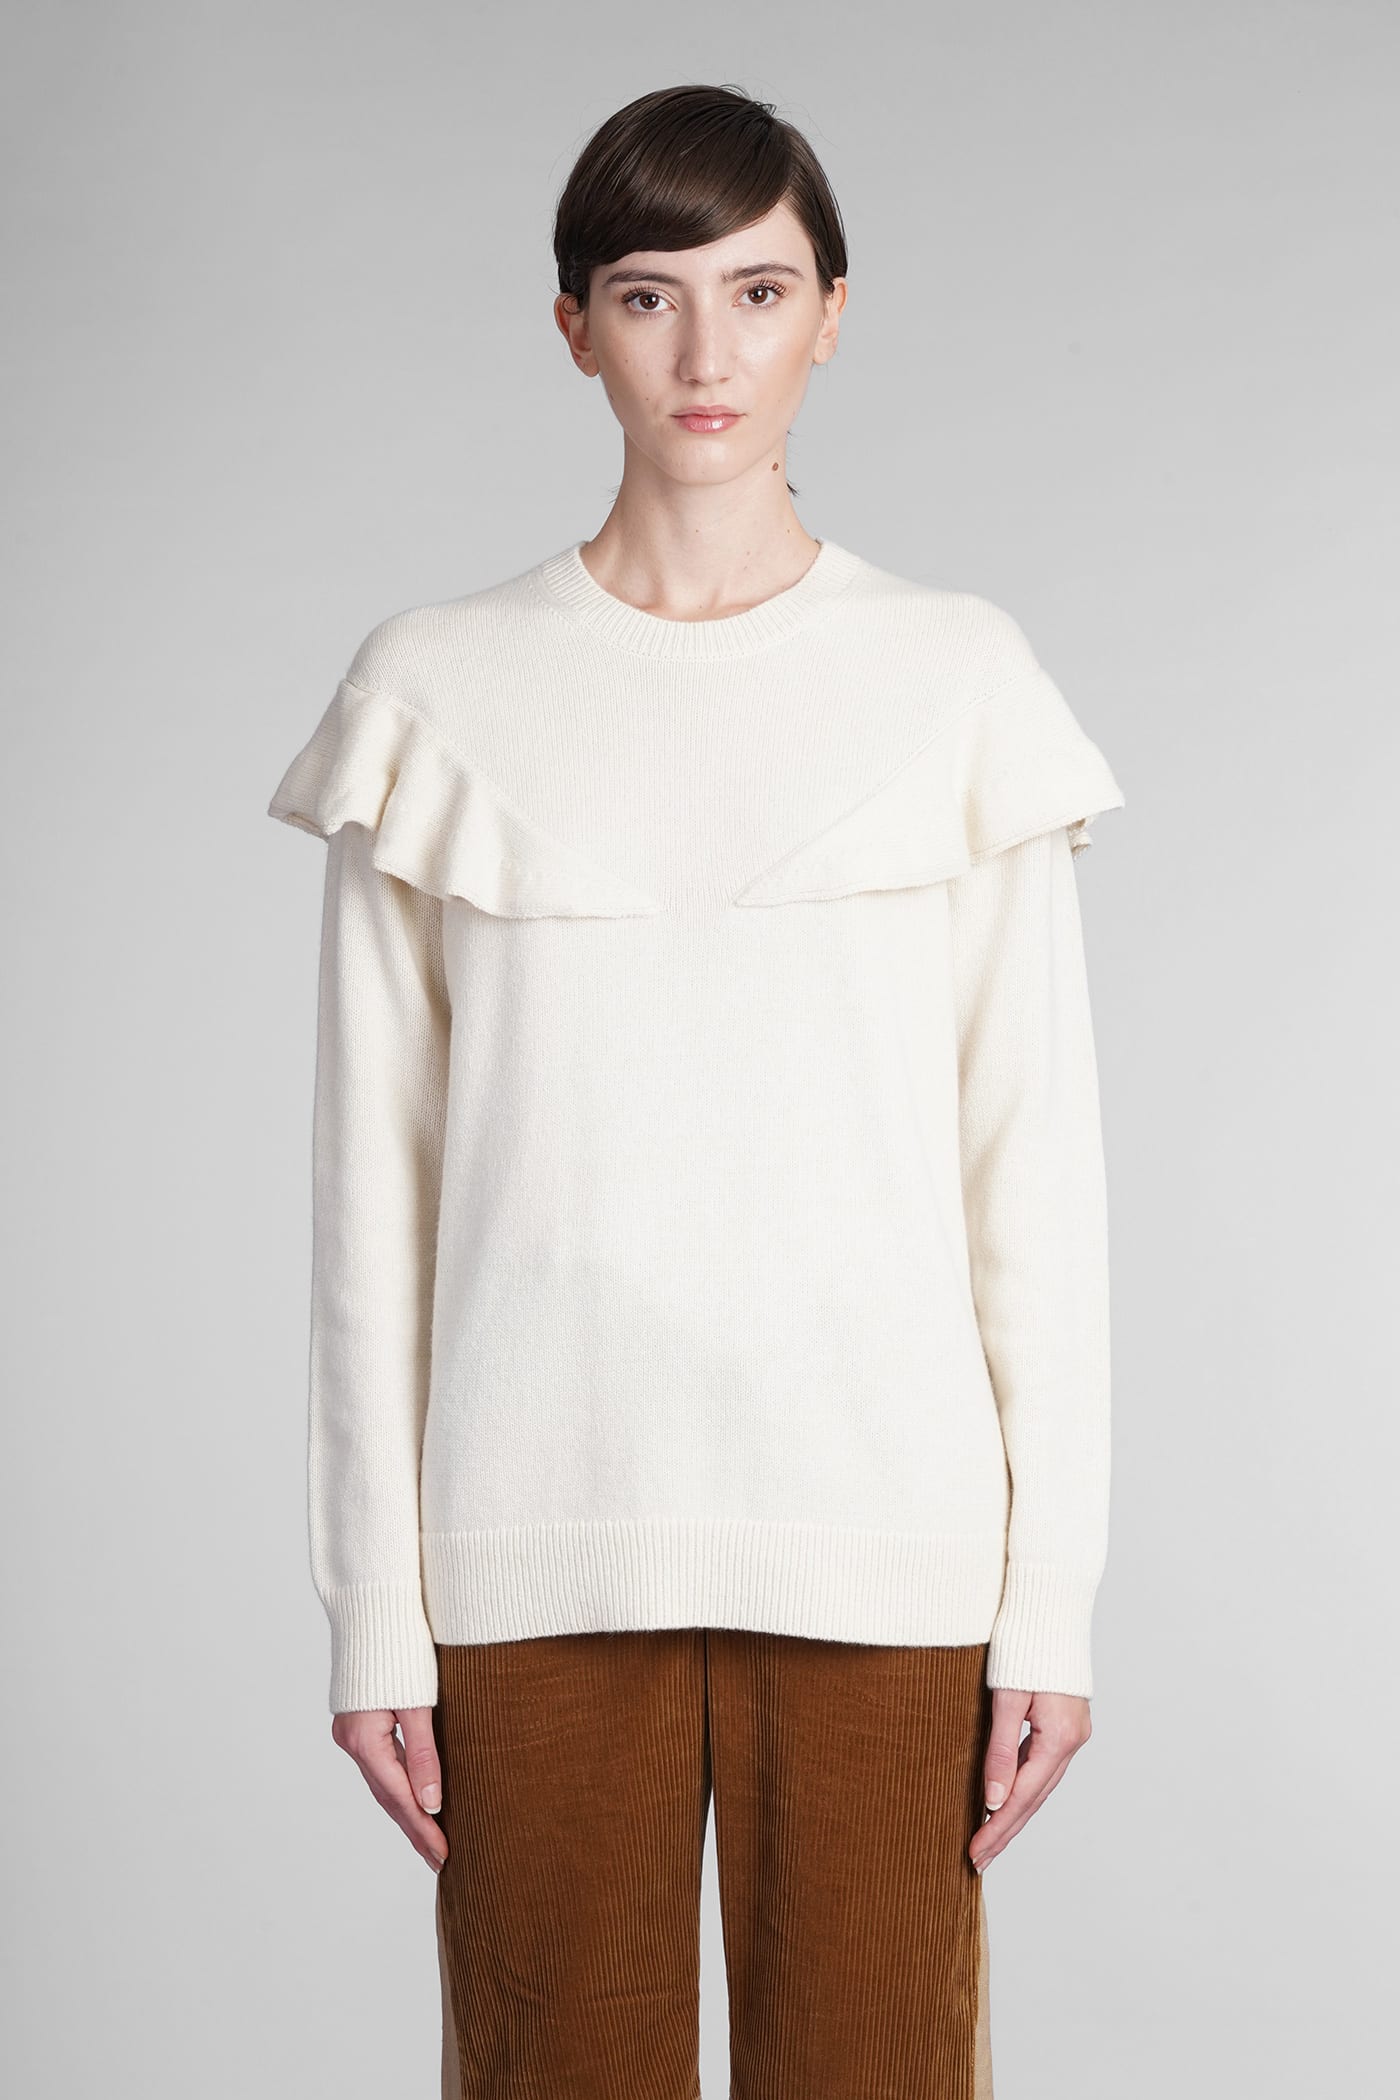 Chloé Knitwear In White Wool